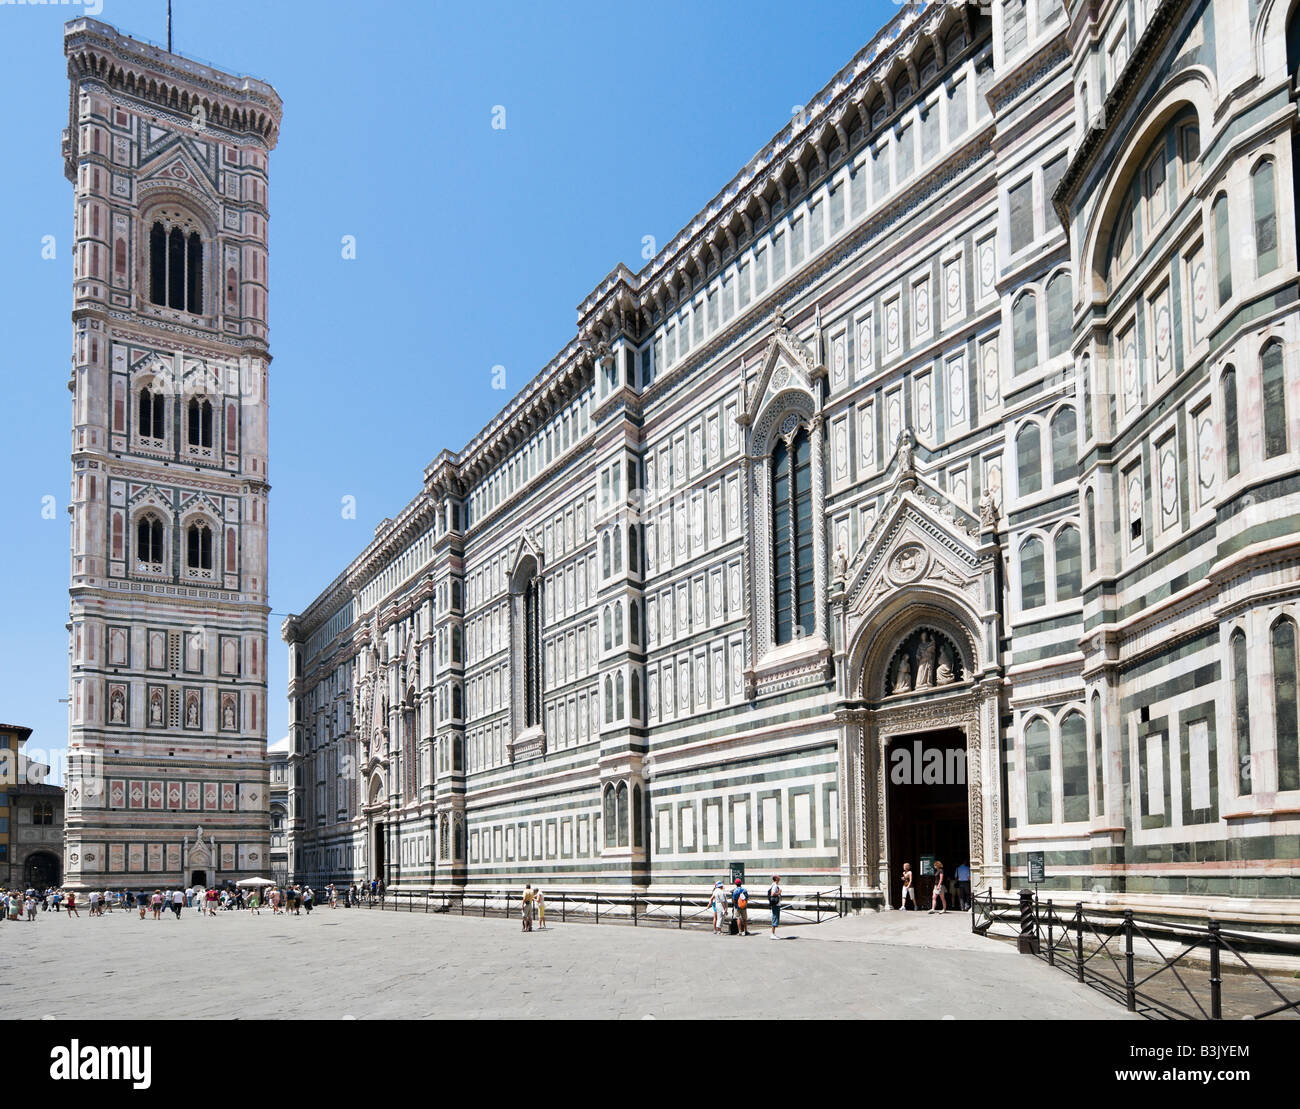 Basilica di Santa Maria del Fiore (the Duomo) and Giotto's Campanile from Piazza del Duomo, Florence, Tuscany, Italy Stock Photo